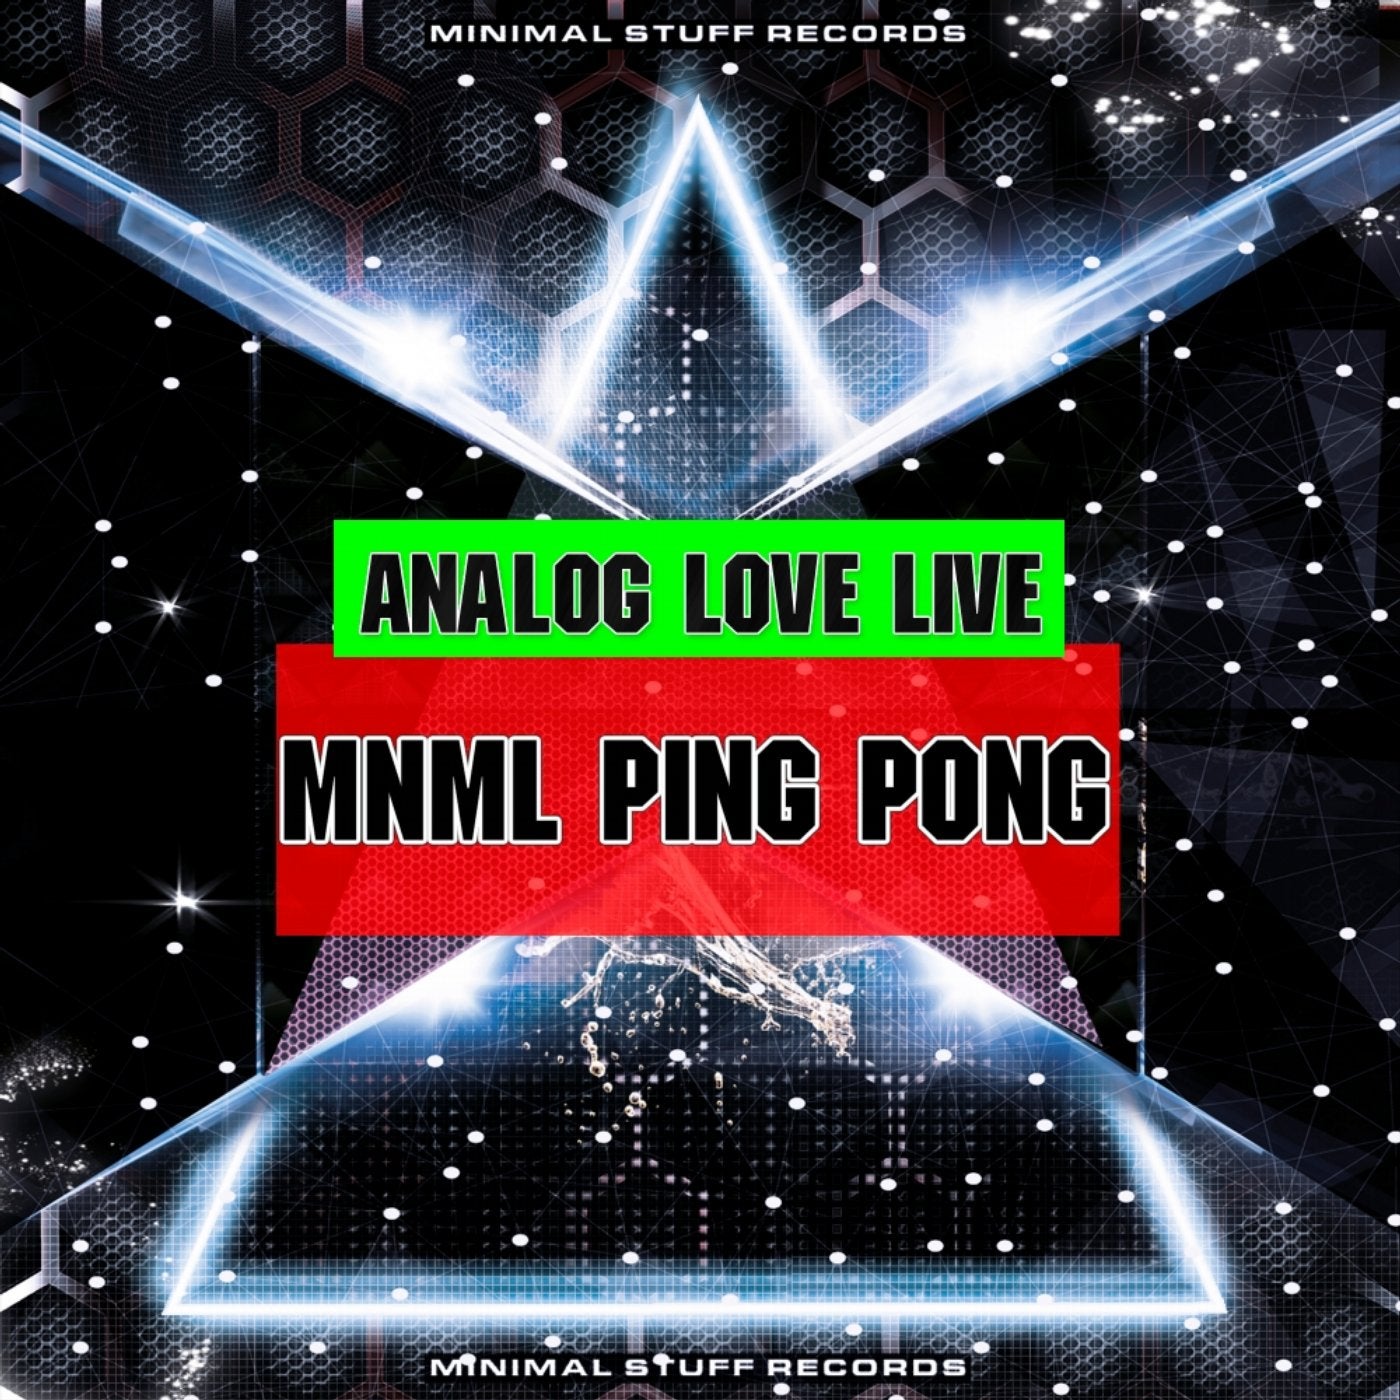 Mnml Ping Pong